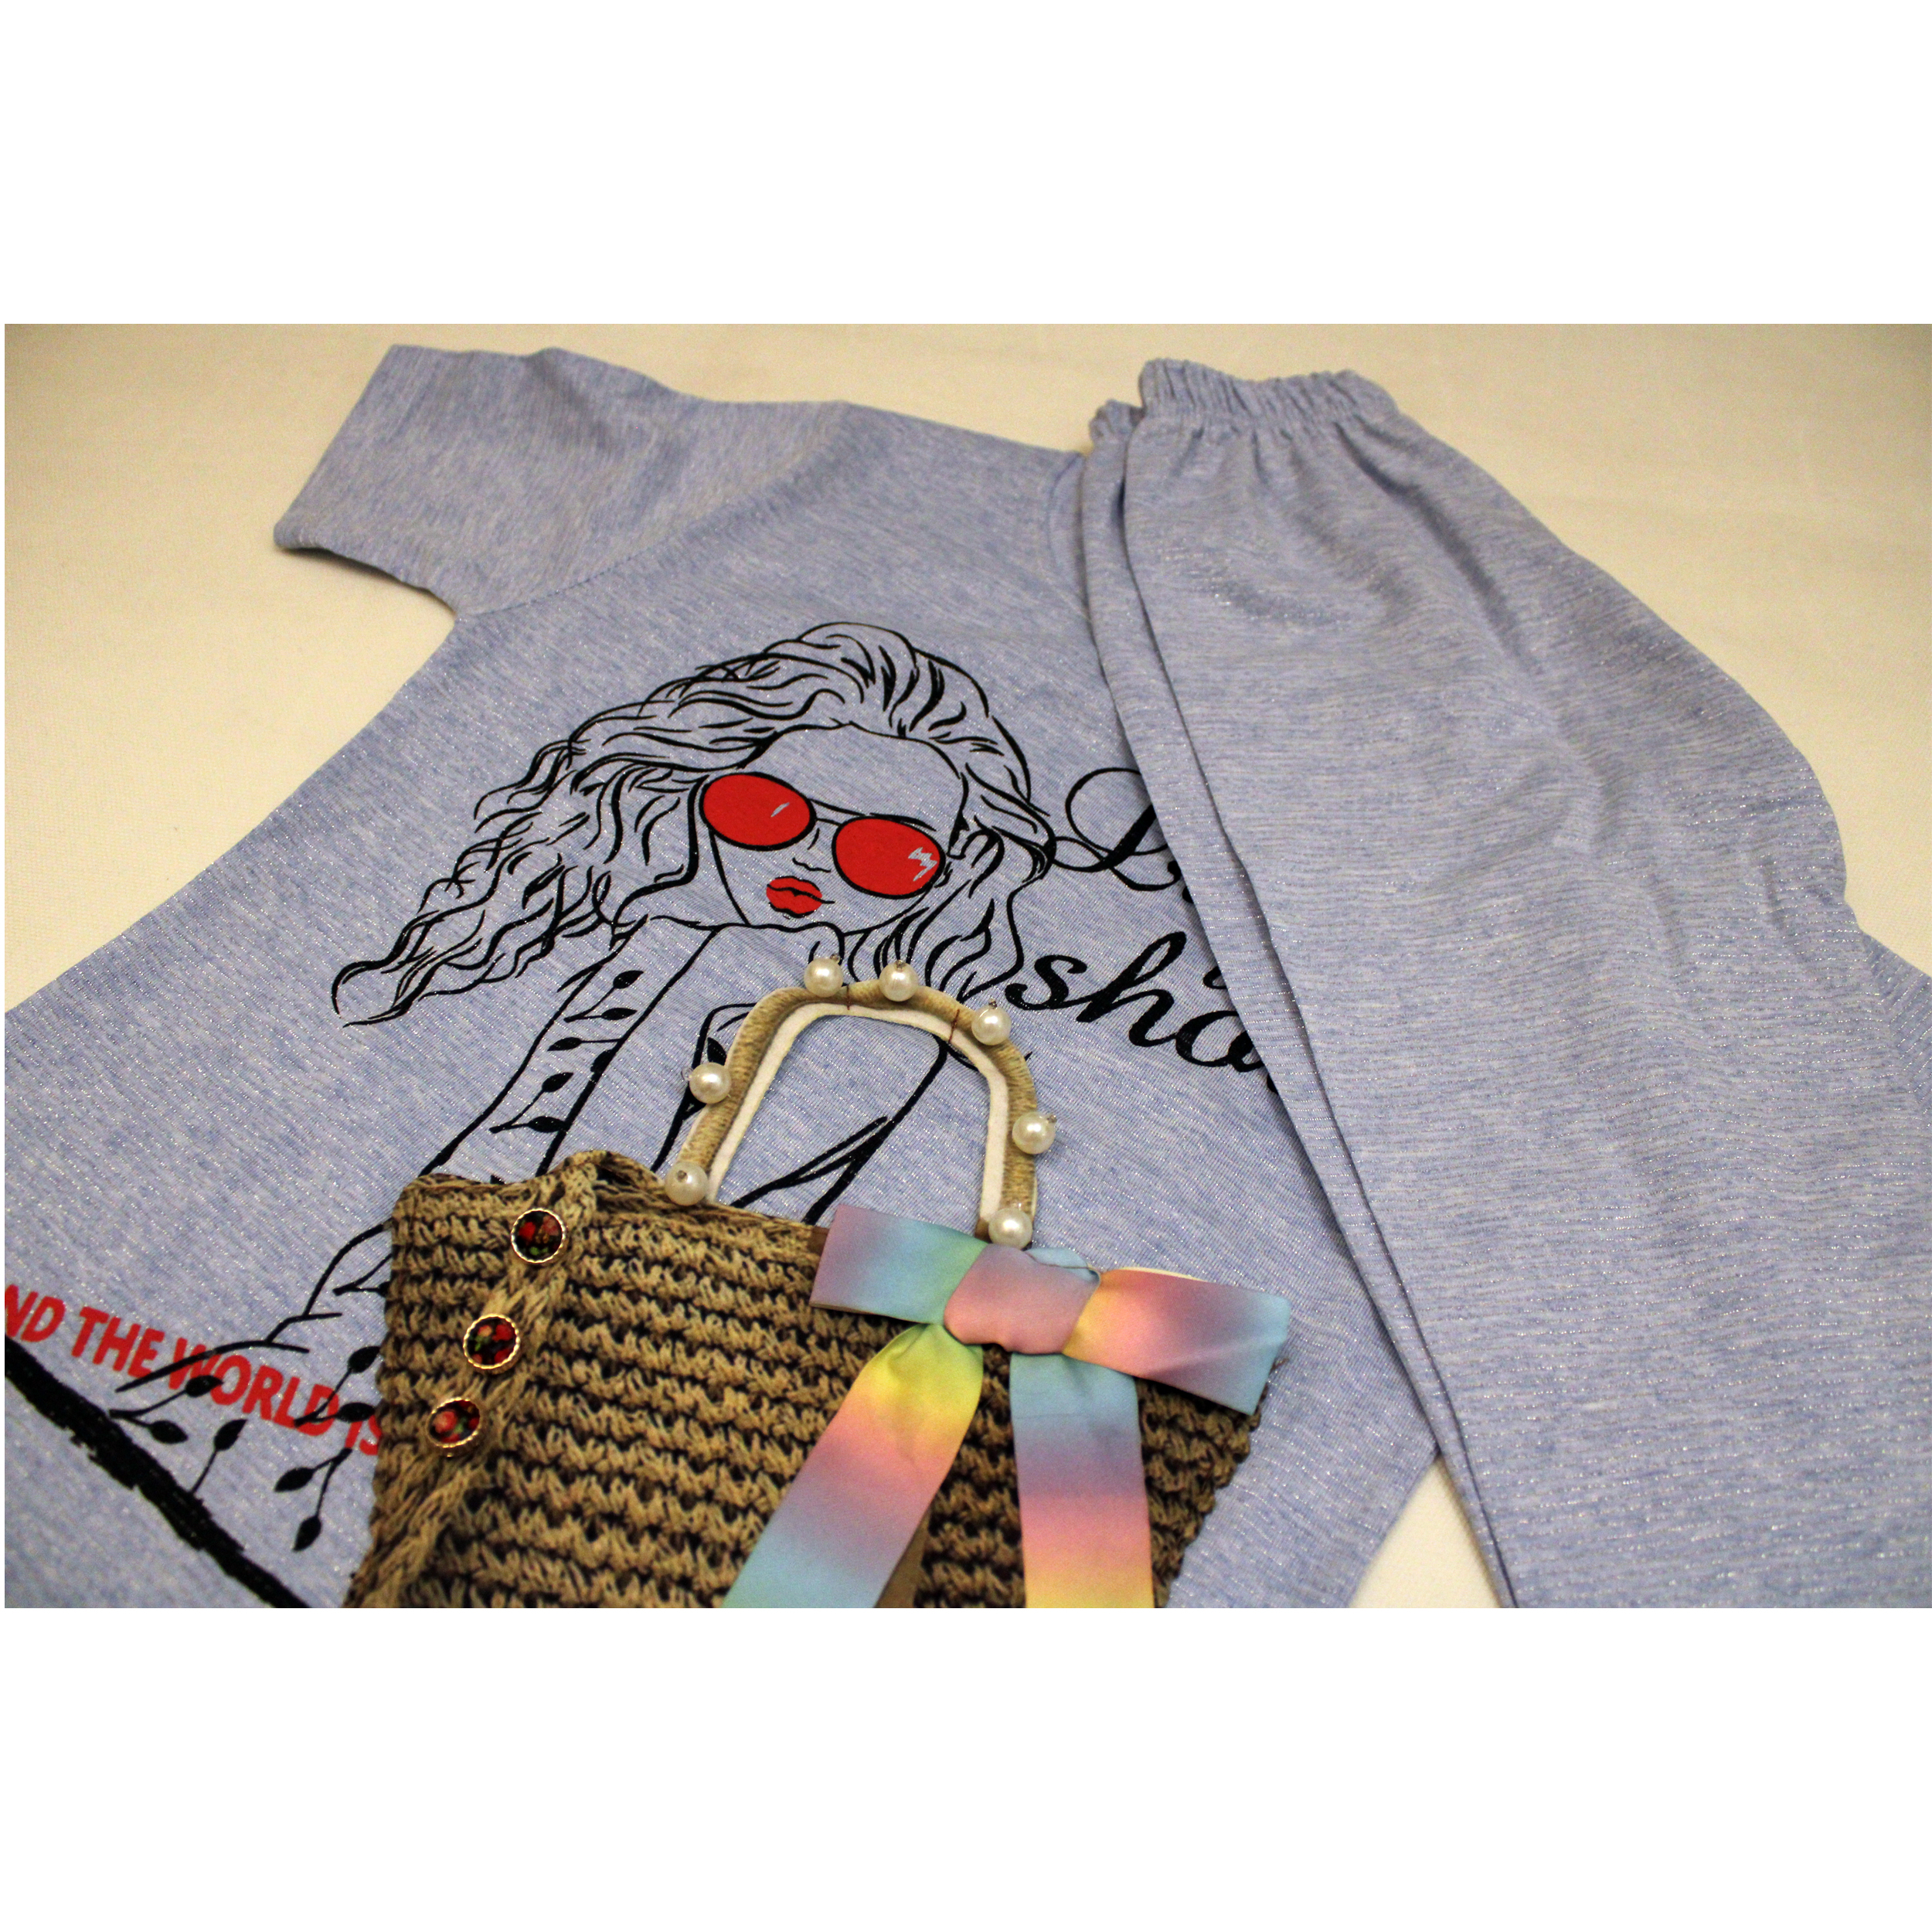 ست تی شرت و شلوارک دخترانه بانالی مدل هیلاری کد 3551 -  - 2